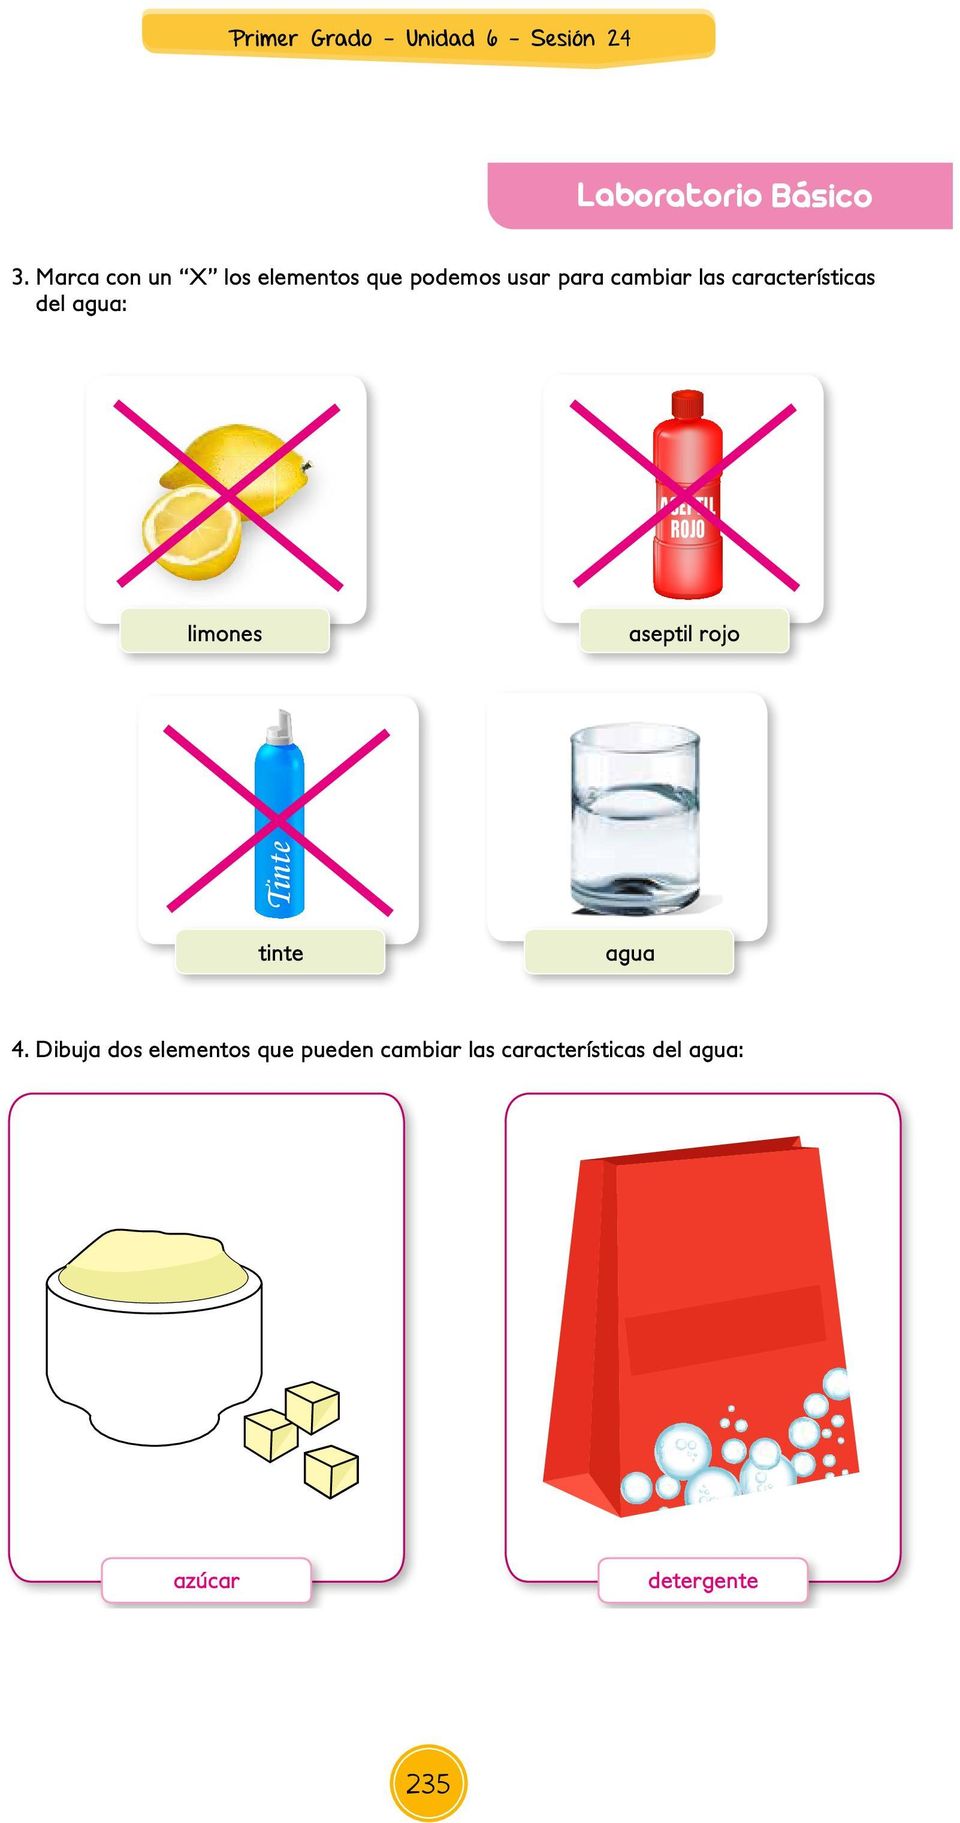 ASEPTIL ROJO aseptil rojo Tinte limones tinte agua 4.